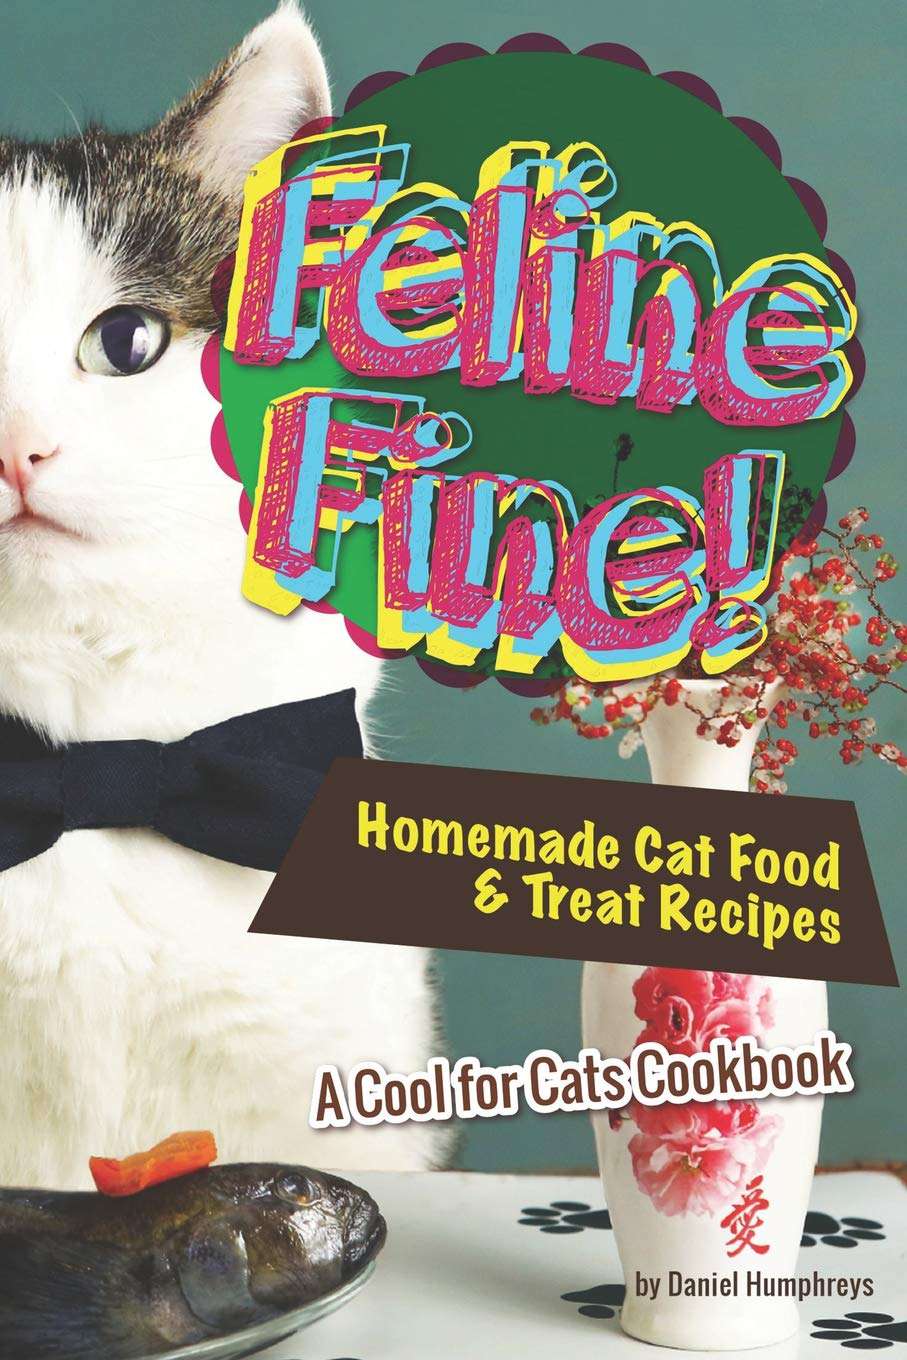 cat cookbook